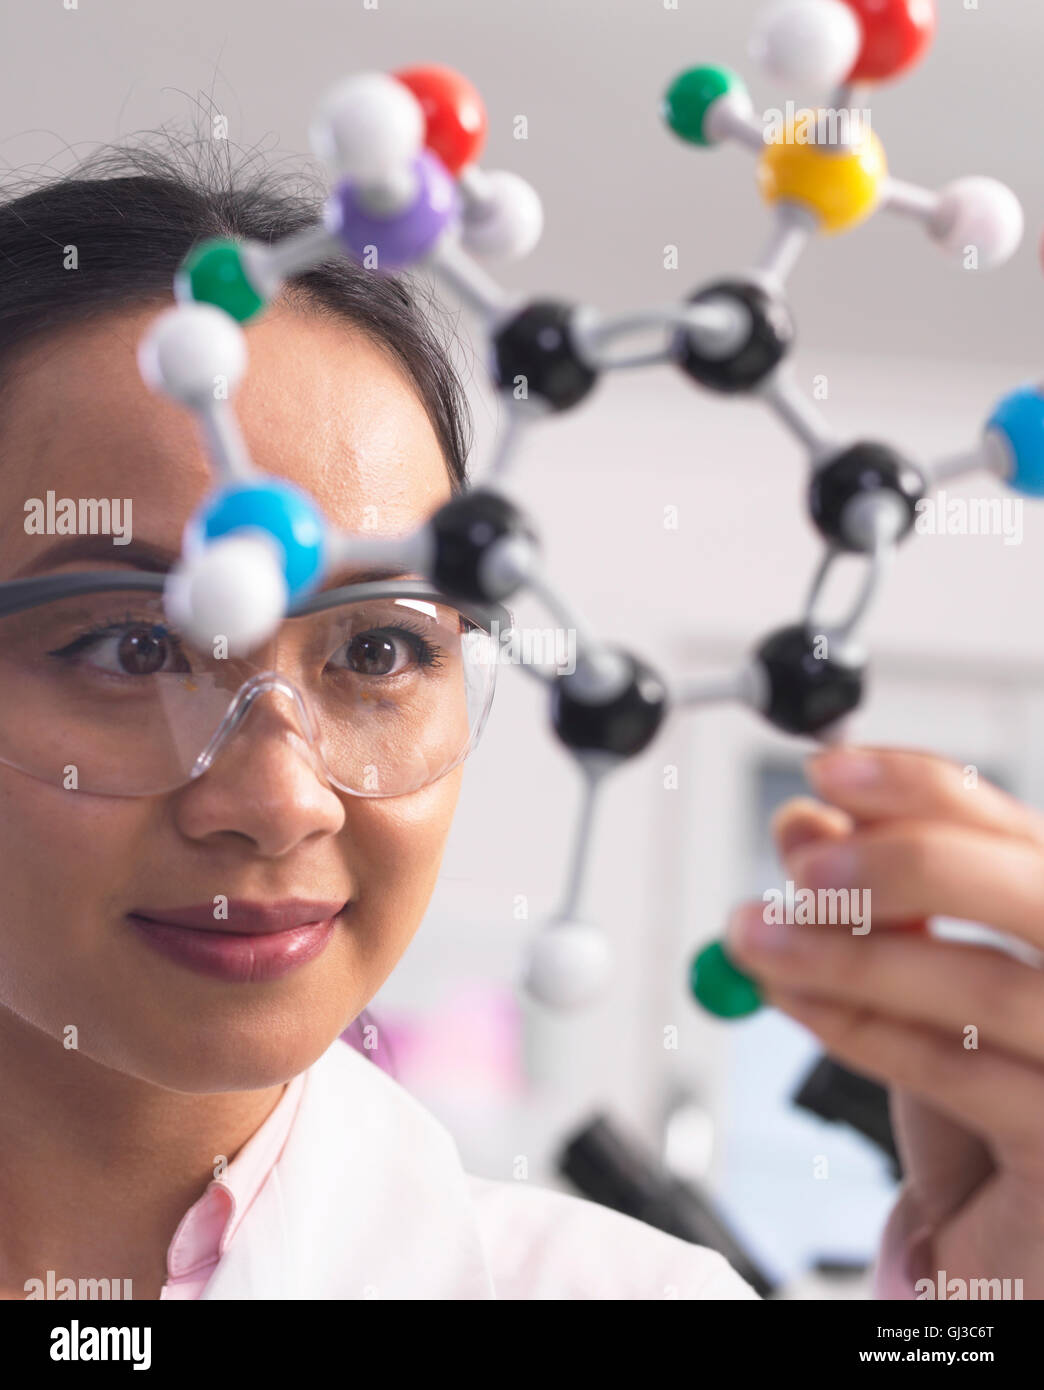 Wissenschaftler mit Molekülmodell, chemische Formel zu verstehen Stockfoto